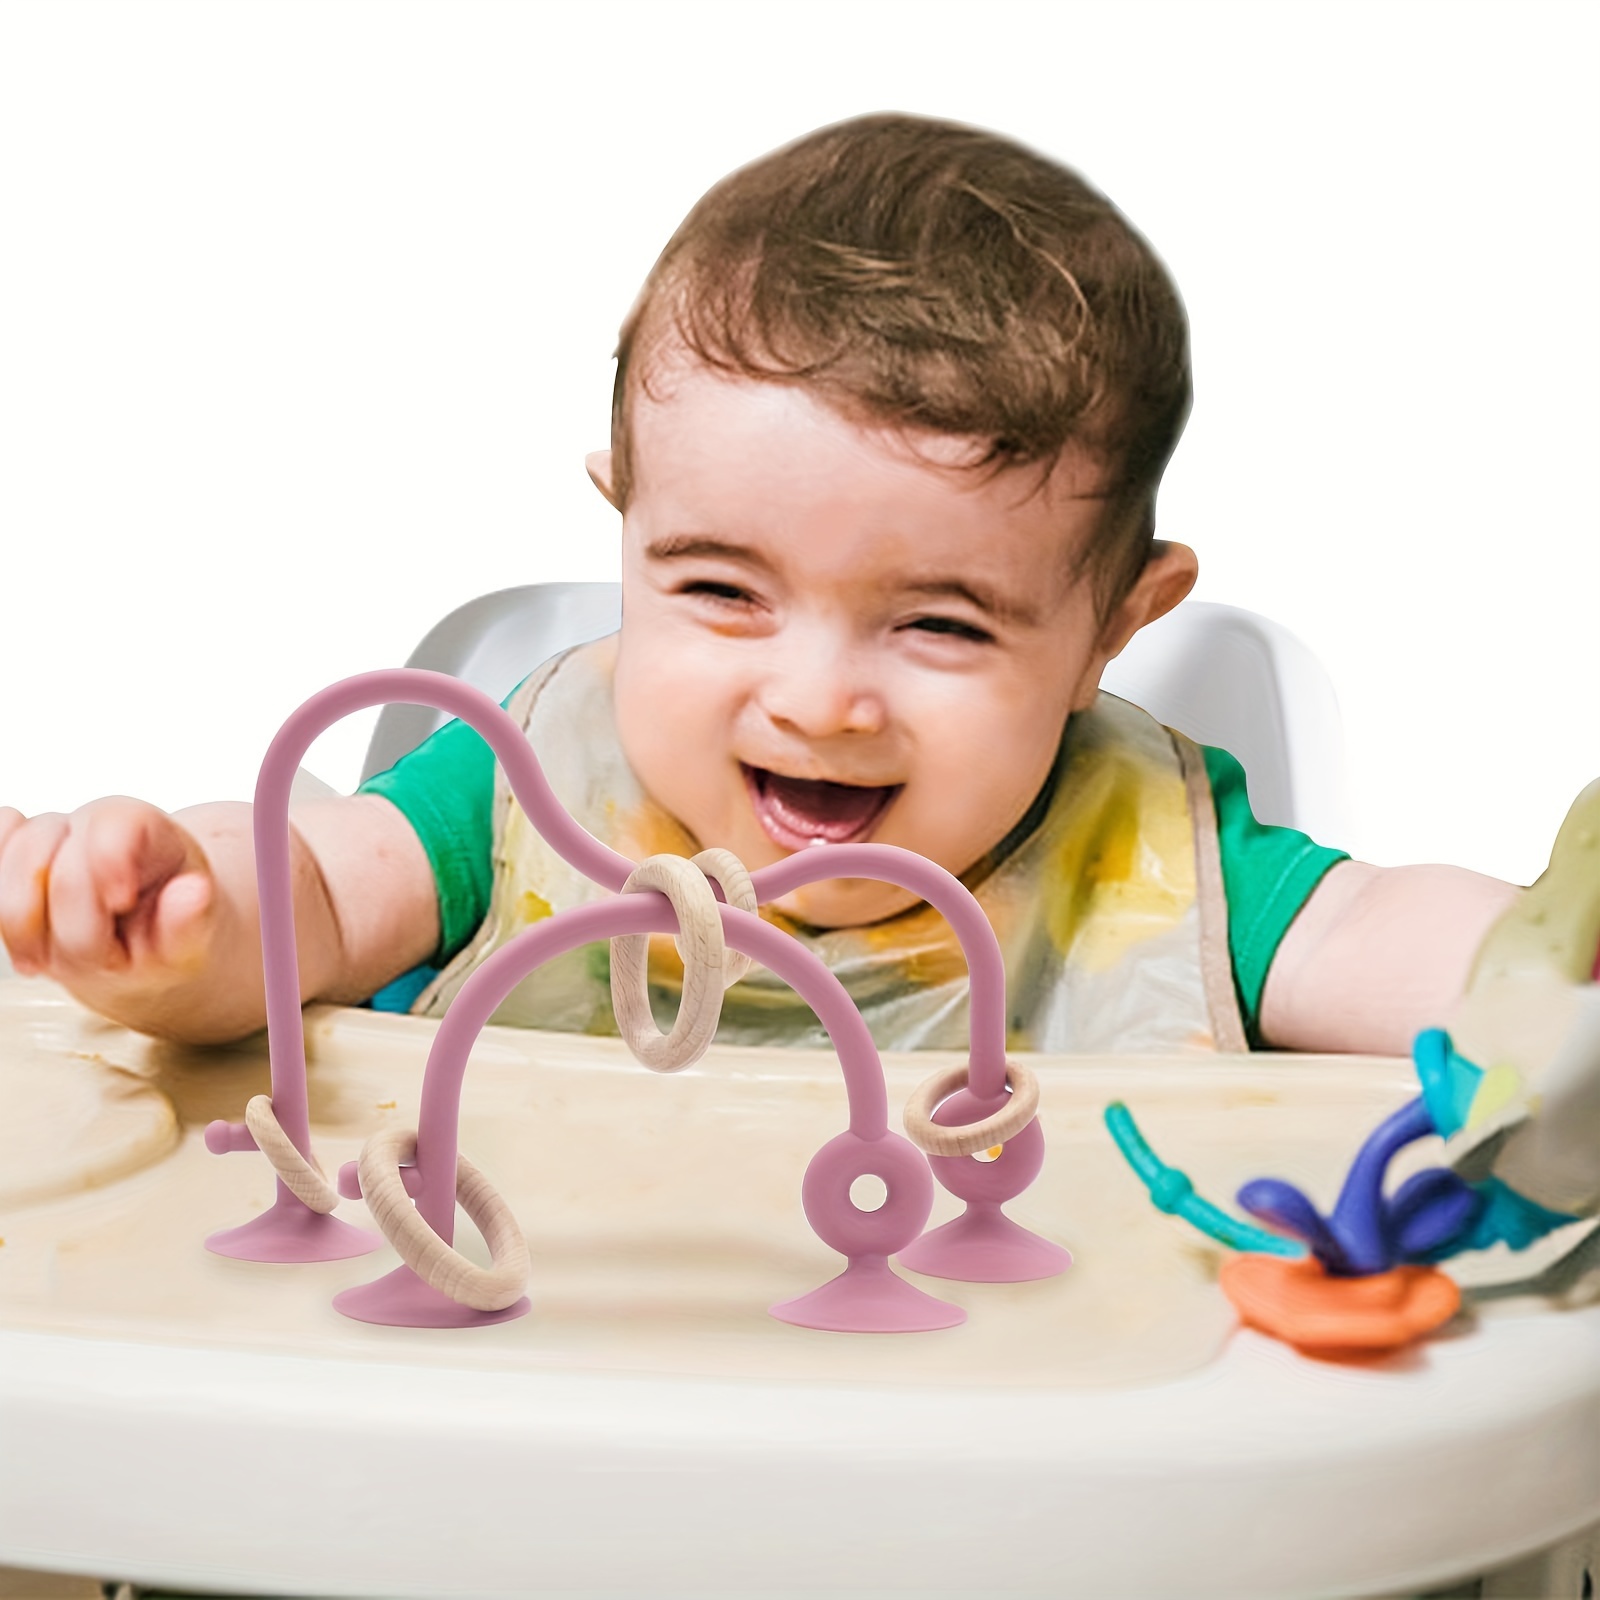 1pc Animal Sucker Toy, jouet à ventouse en forme d'antennes longues pour la  libération du stress, jeu interactif parent-enfant, cadeau pour enfants